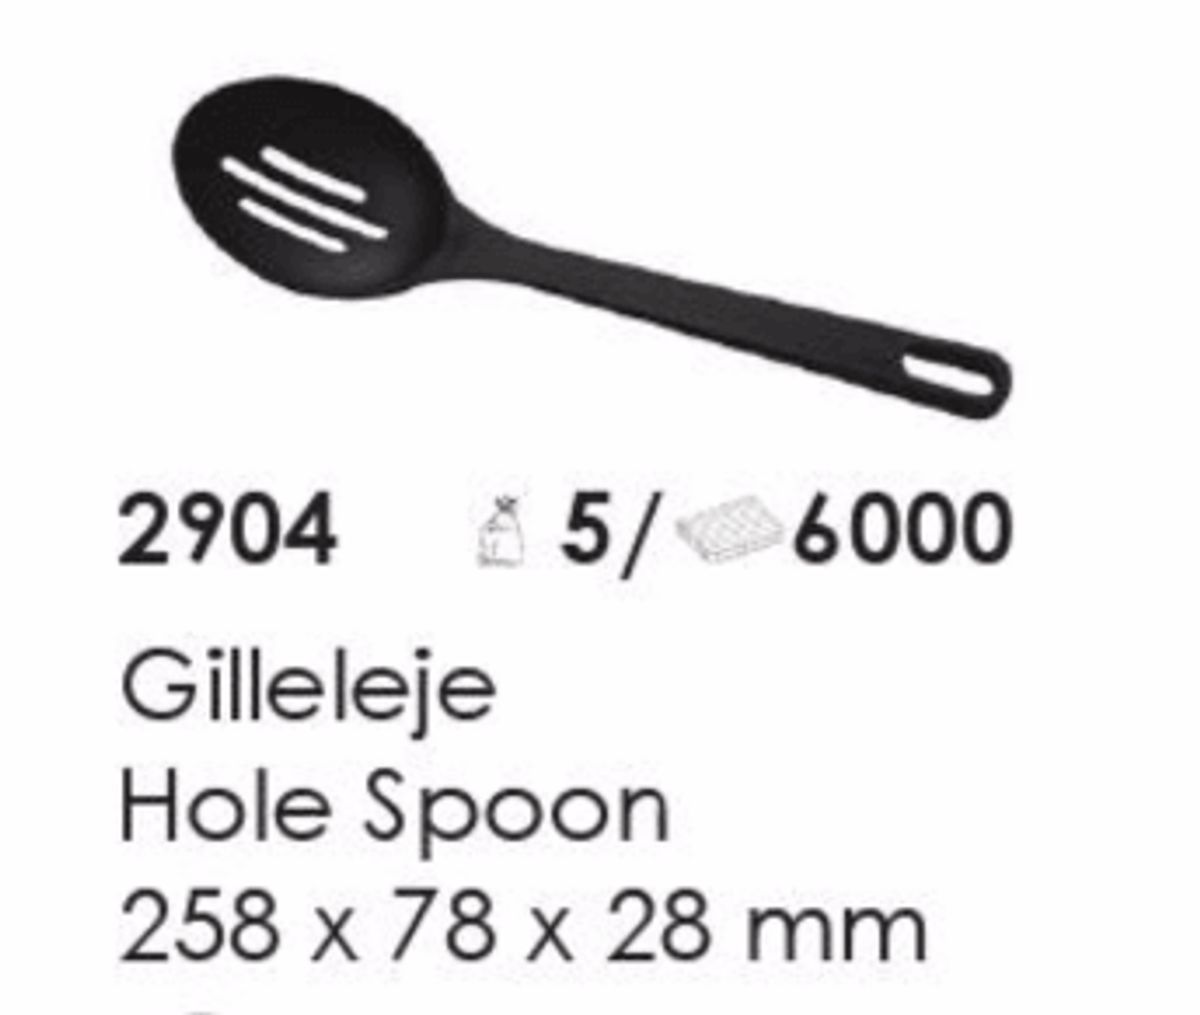 Gilleleje Hole Spoon, artikel nr. 2904 (Hulske) Foto: Screenshot fra katalog fra Plast Team A/S.